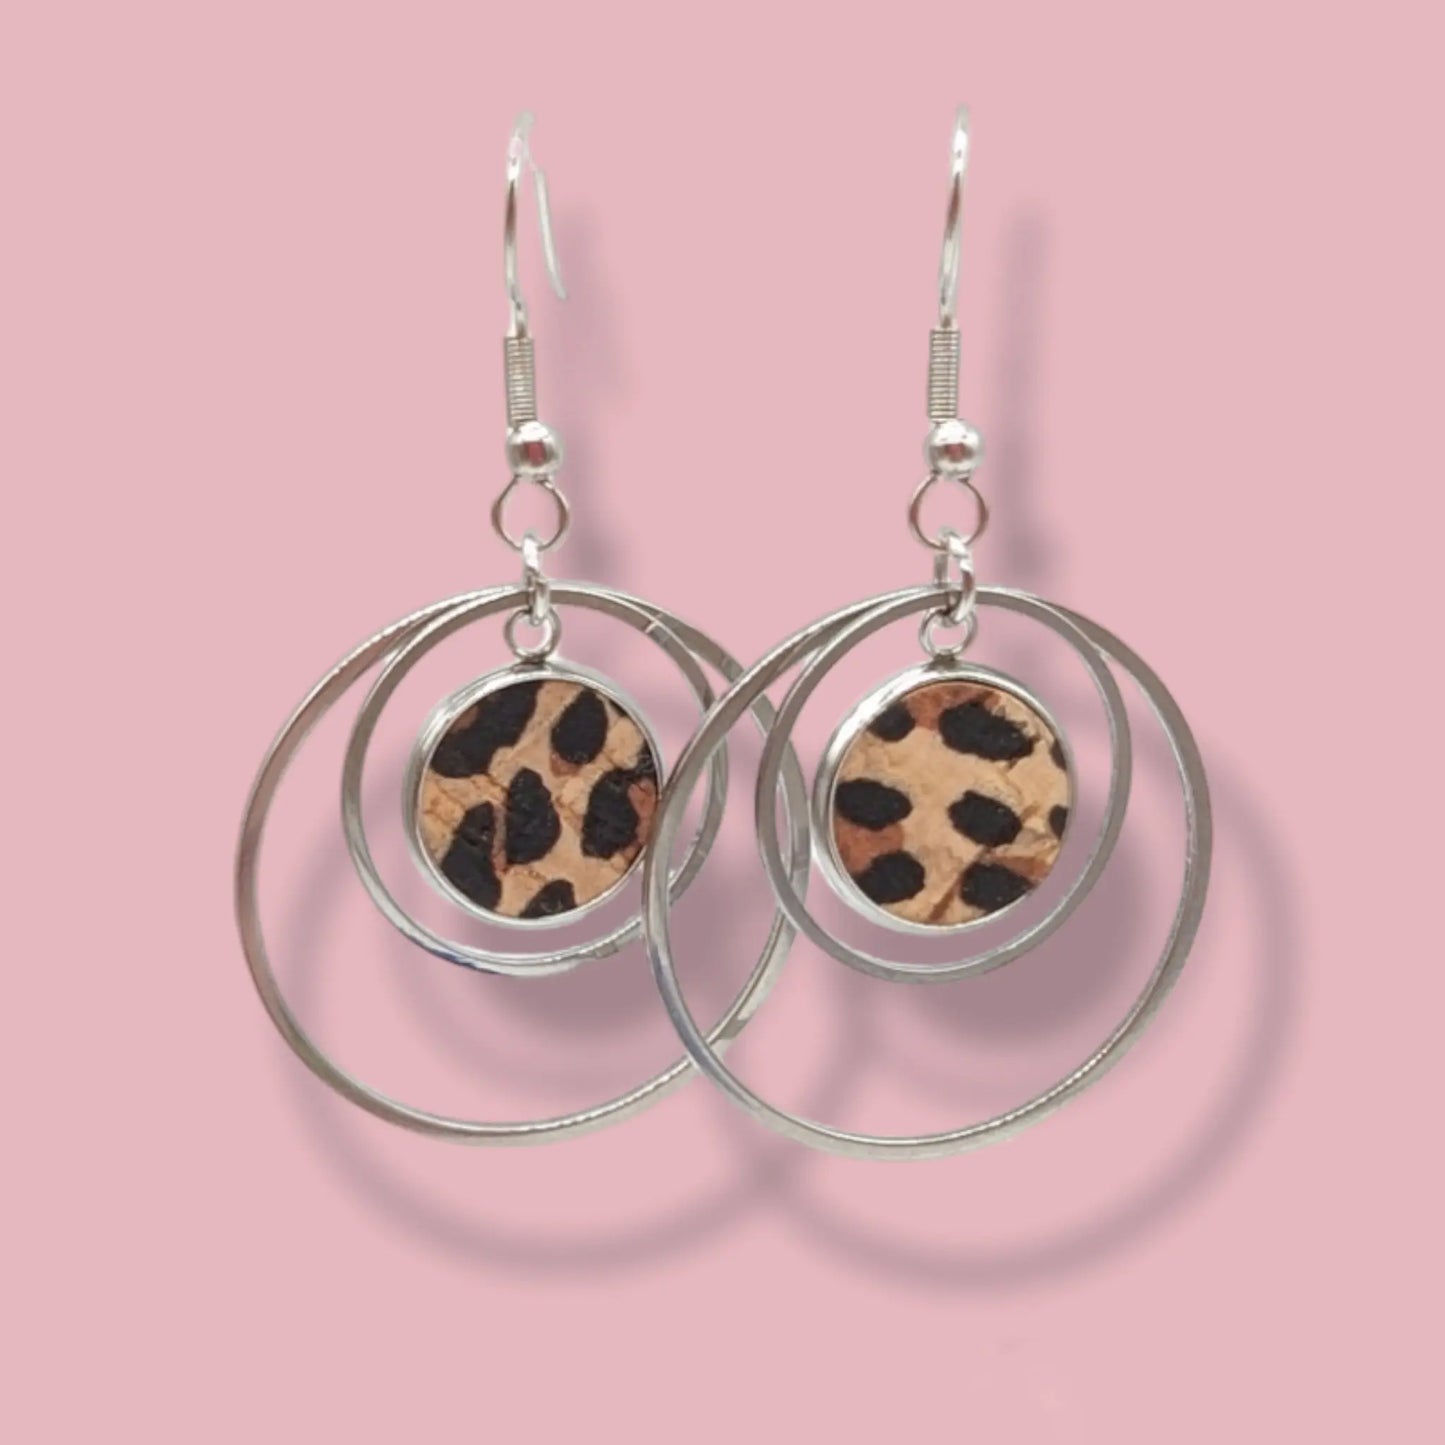 Cork and steel hoop earrings